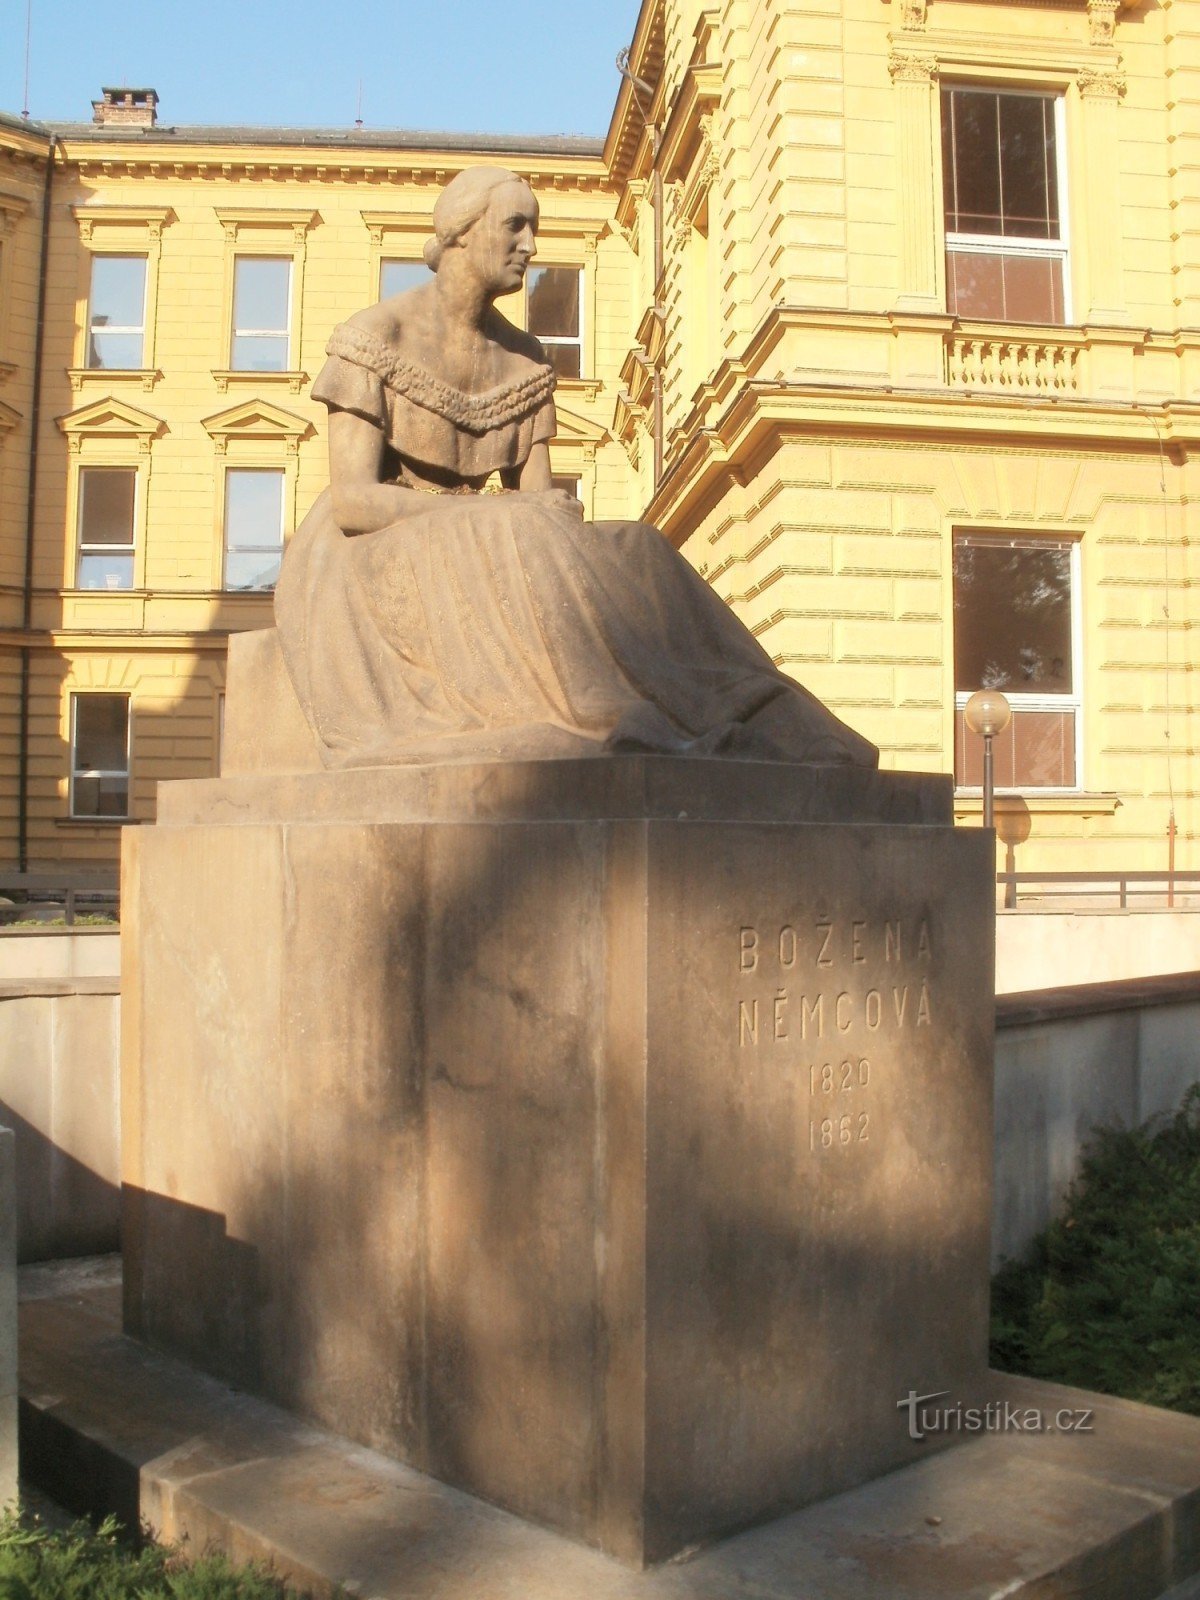 Hradec Králové - estatua de Božena Němcová